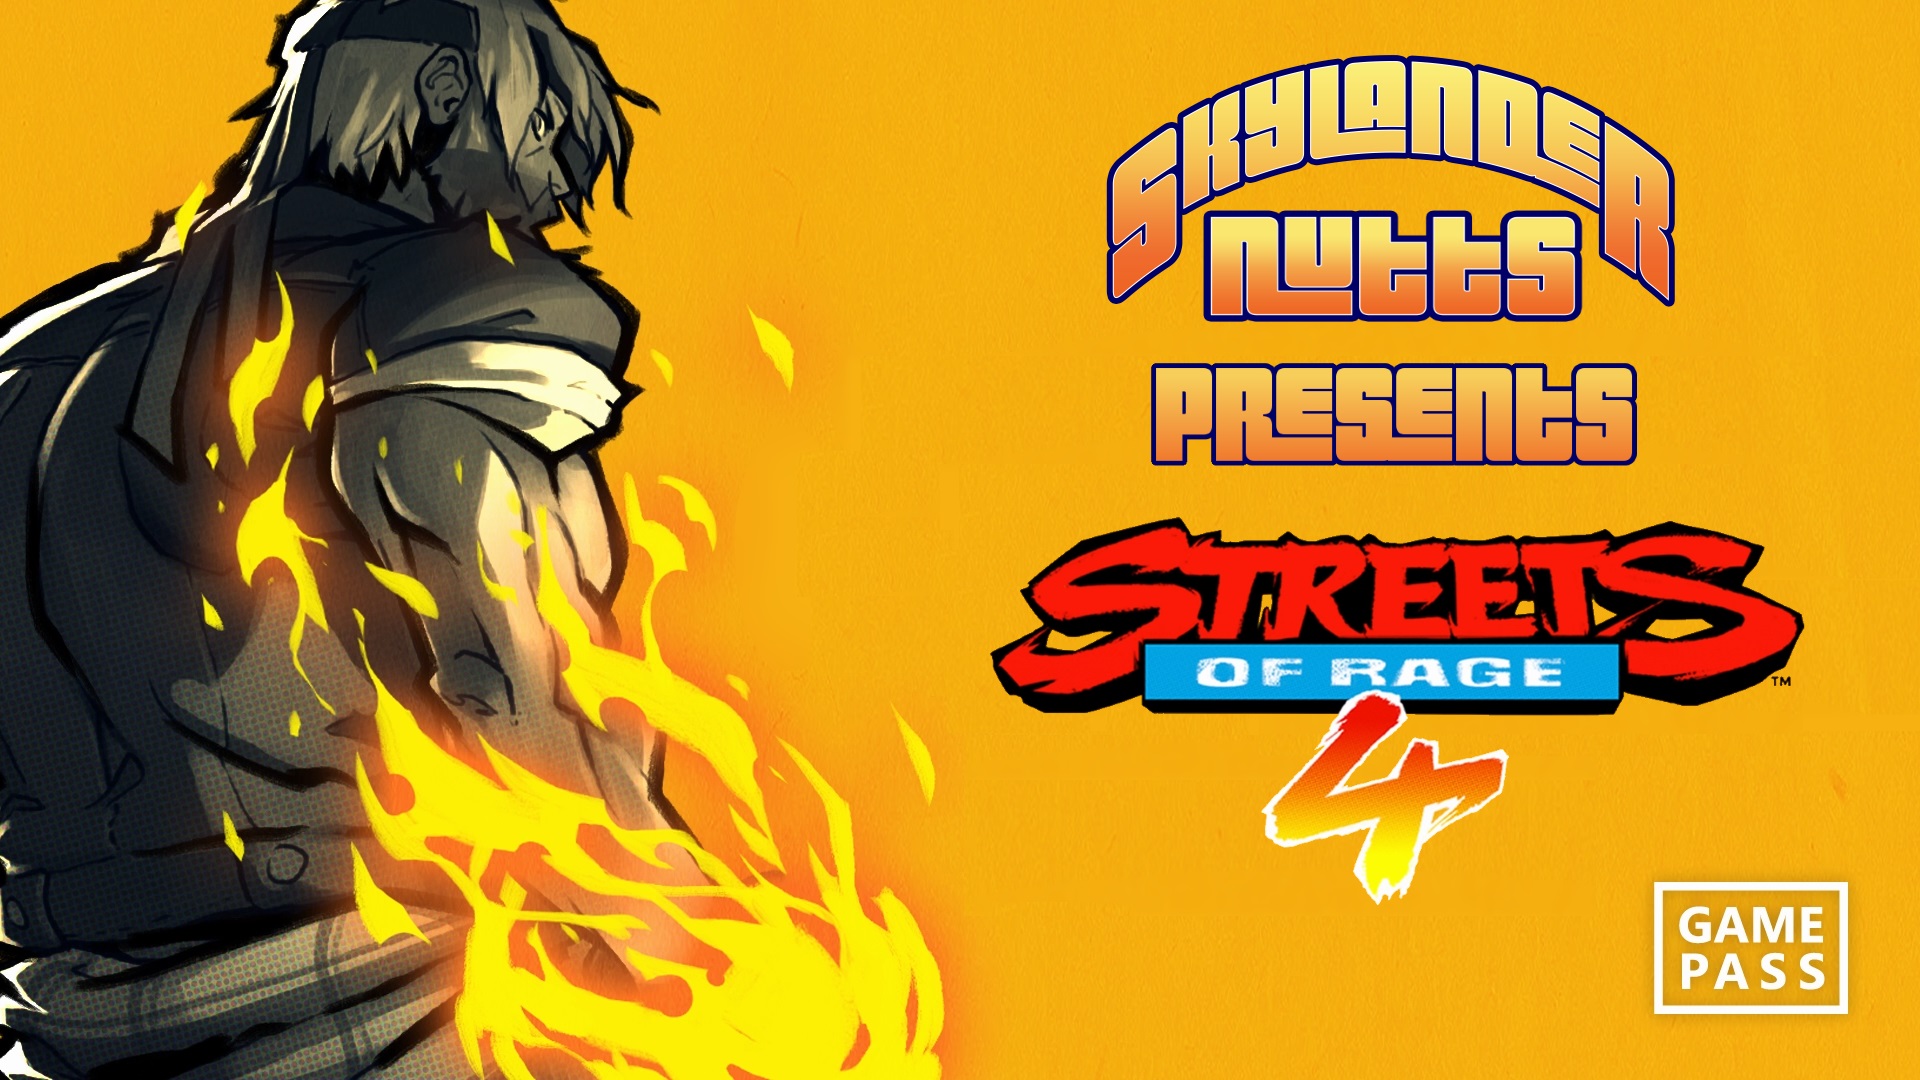 SkylanderNutts Presents Streets of Rage 4